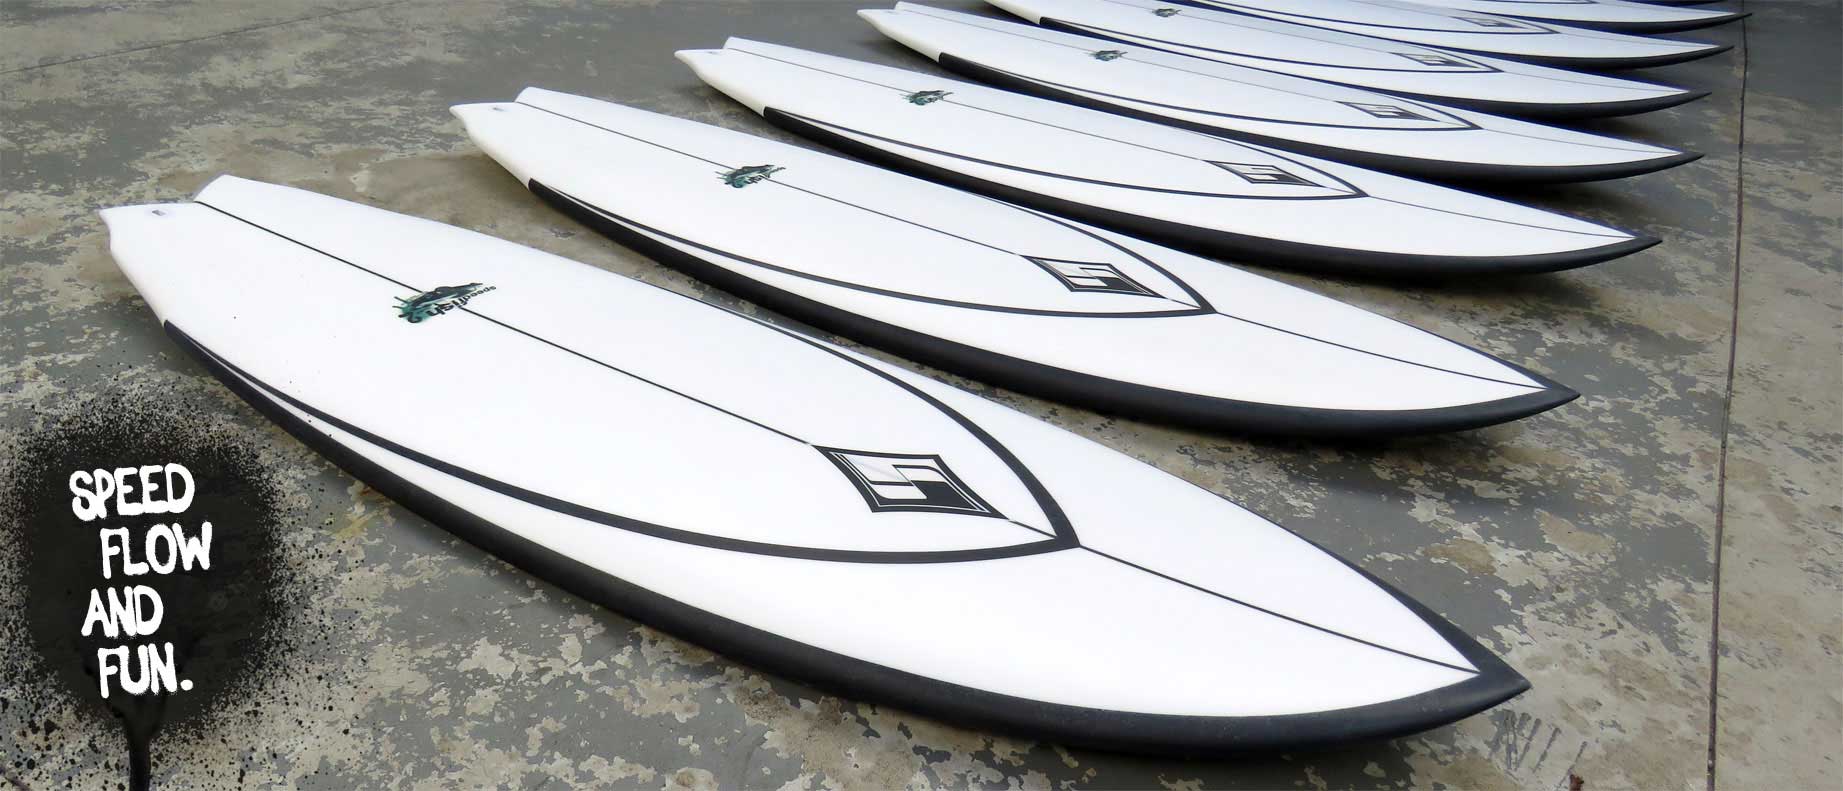 Pranchas de Surf Silver Surfboards Modelo Speed Fish A Venda. Pronta entrega e Sob Encomenda.